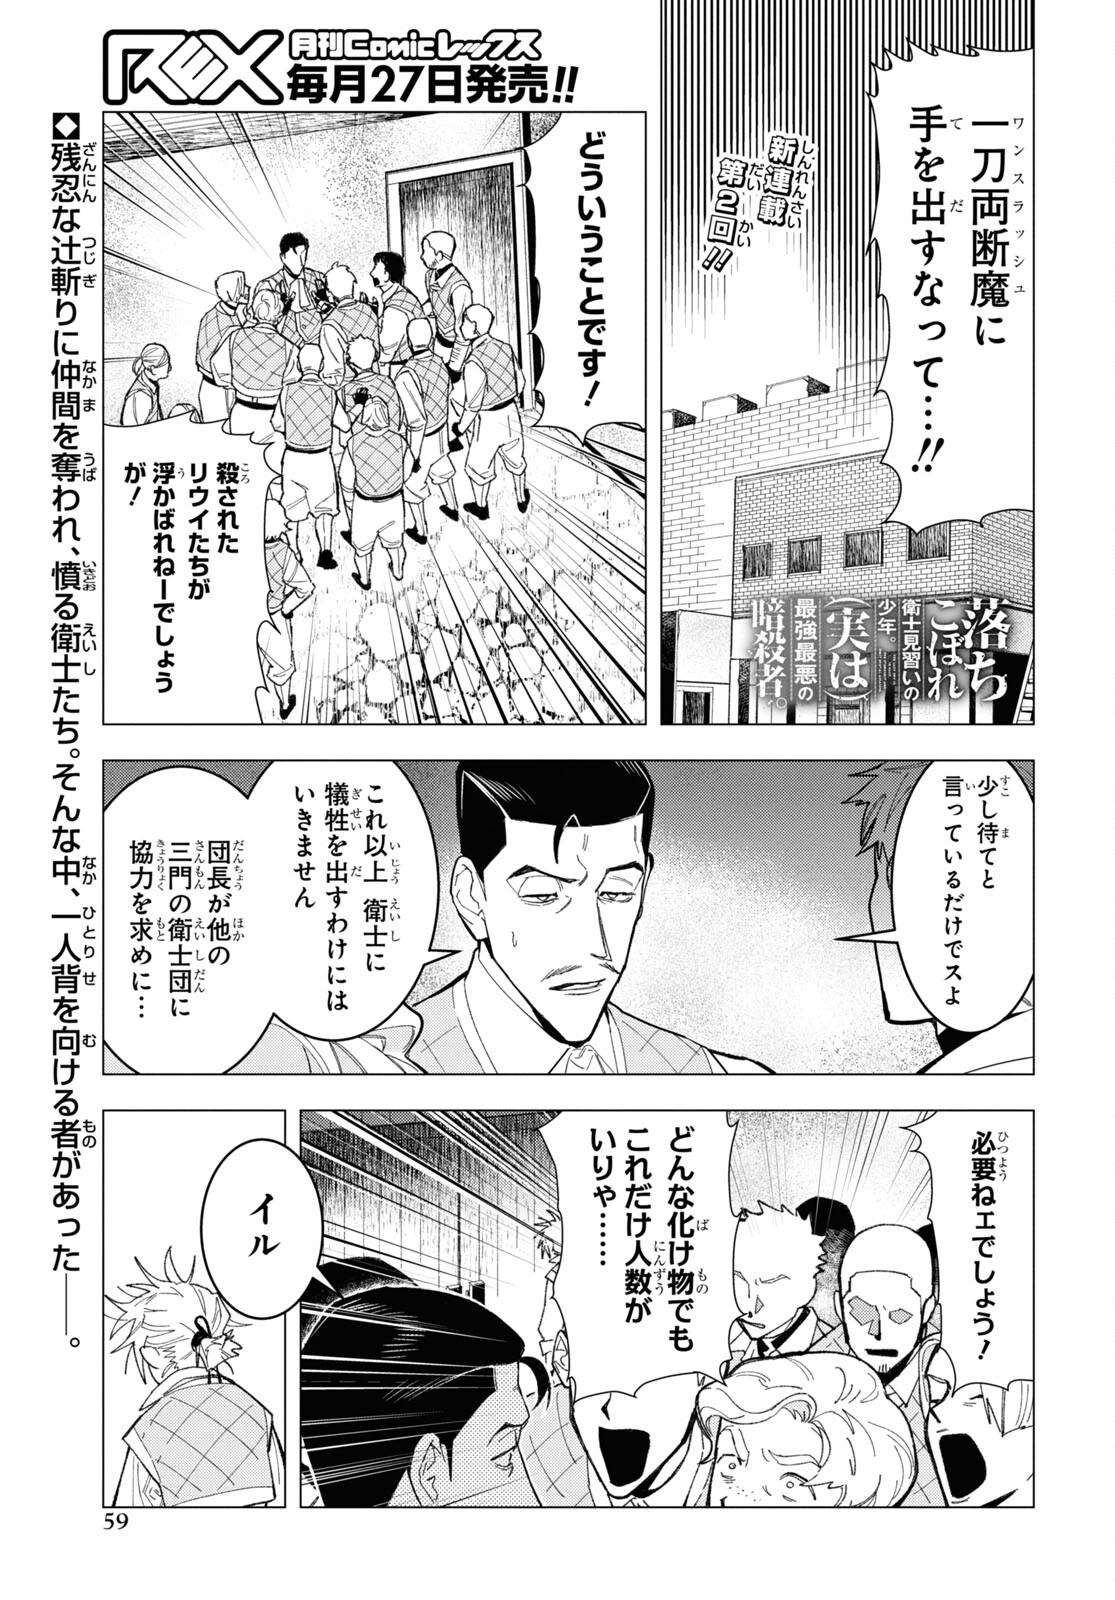 Ochikobore Eji Minarai no Shounen. (Jitsu wa) Saikyou Saiaku no Asashin. - Chapter 2 - Page 1